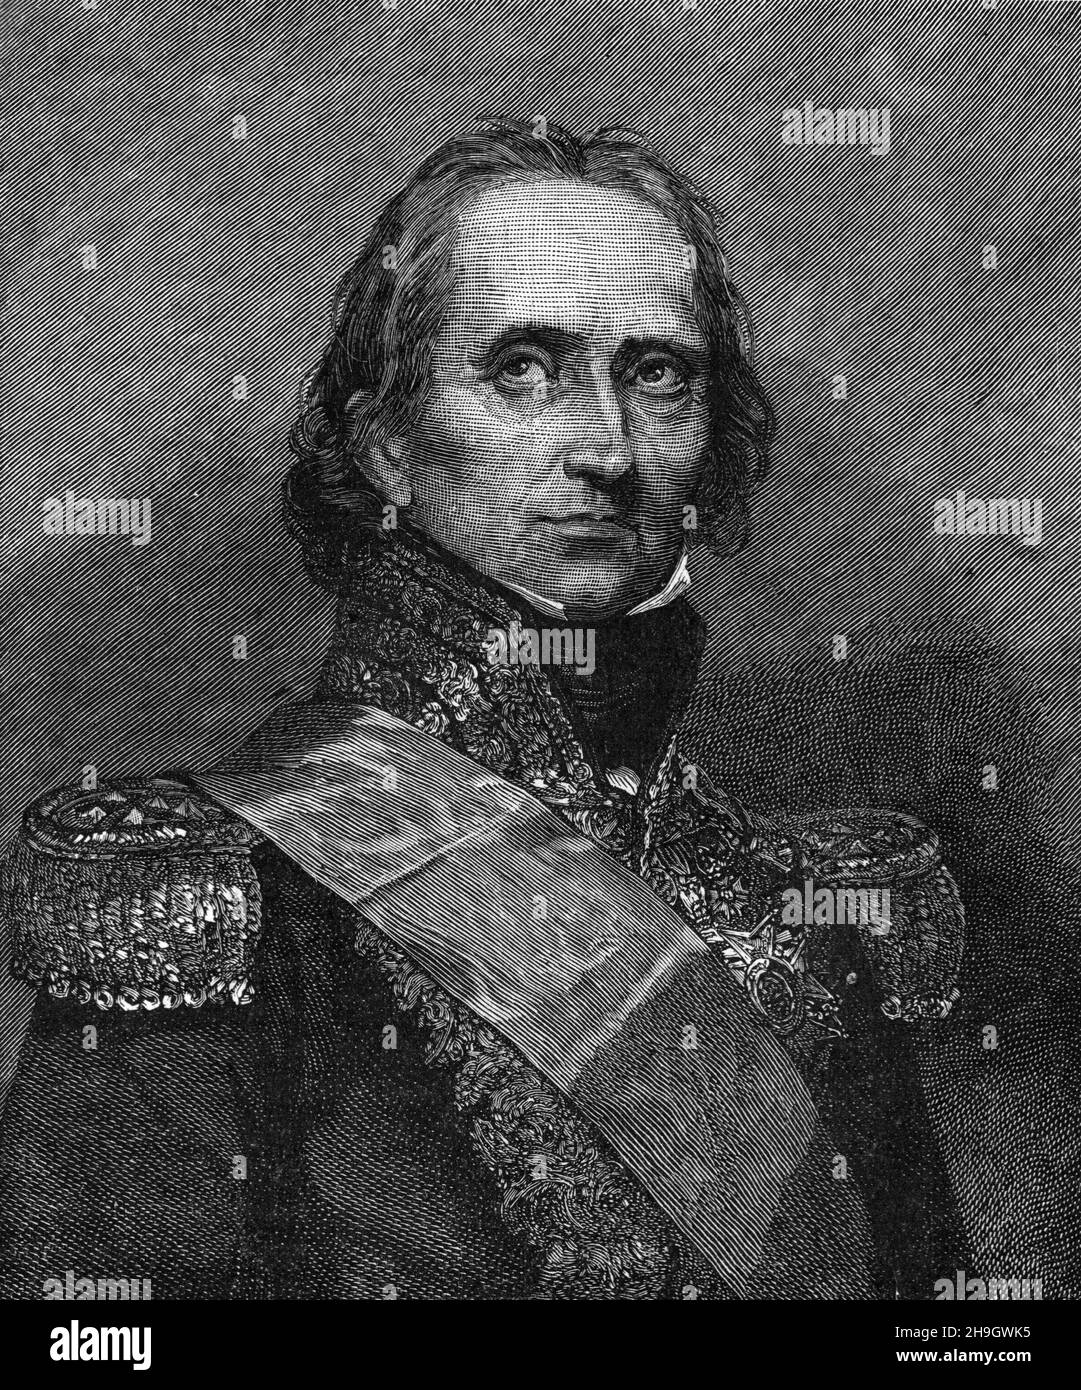 Ritratto del generale maresciallo Jean-de-Dieu Soult, Maresciallo di Francia; illustrazione in bianco e nero Foto Stock